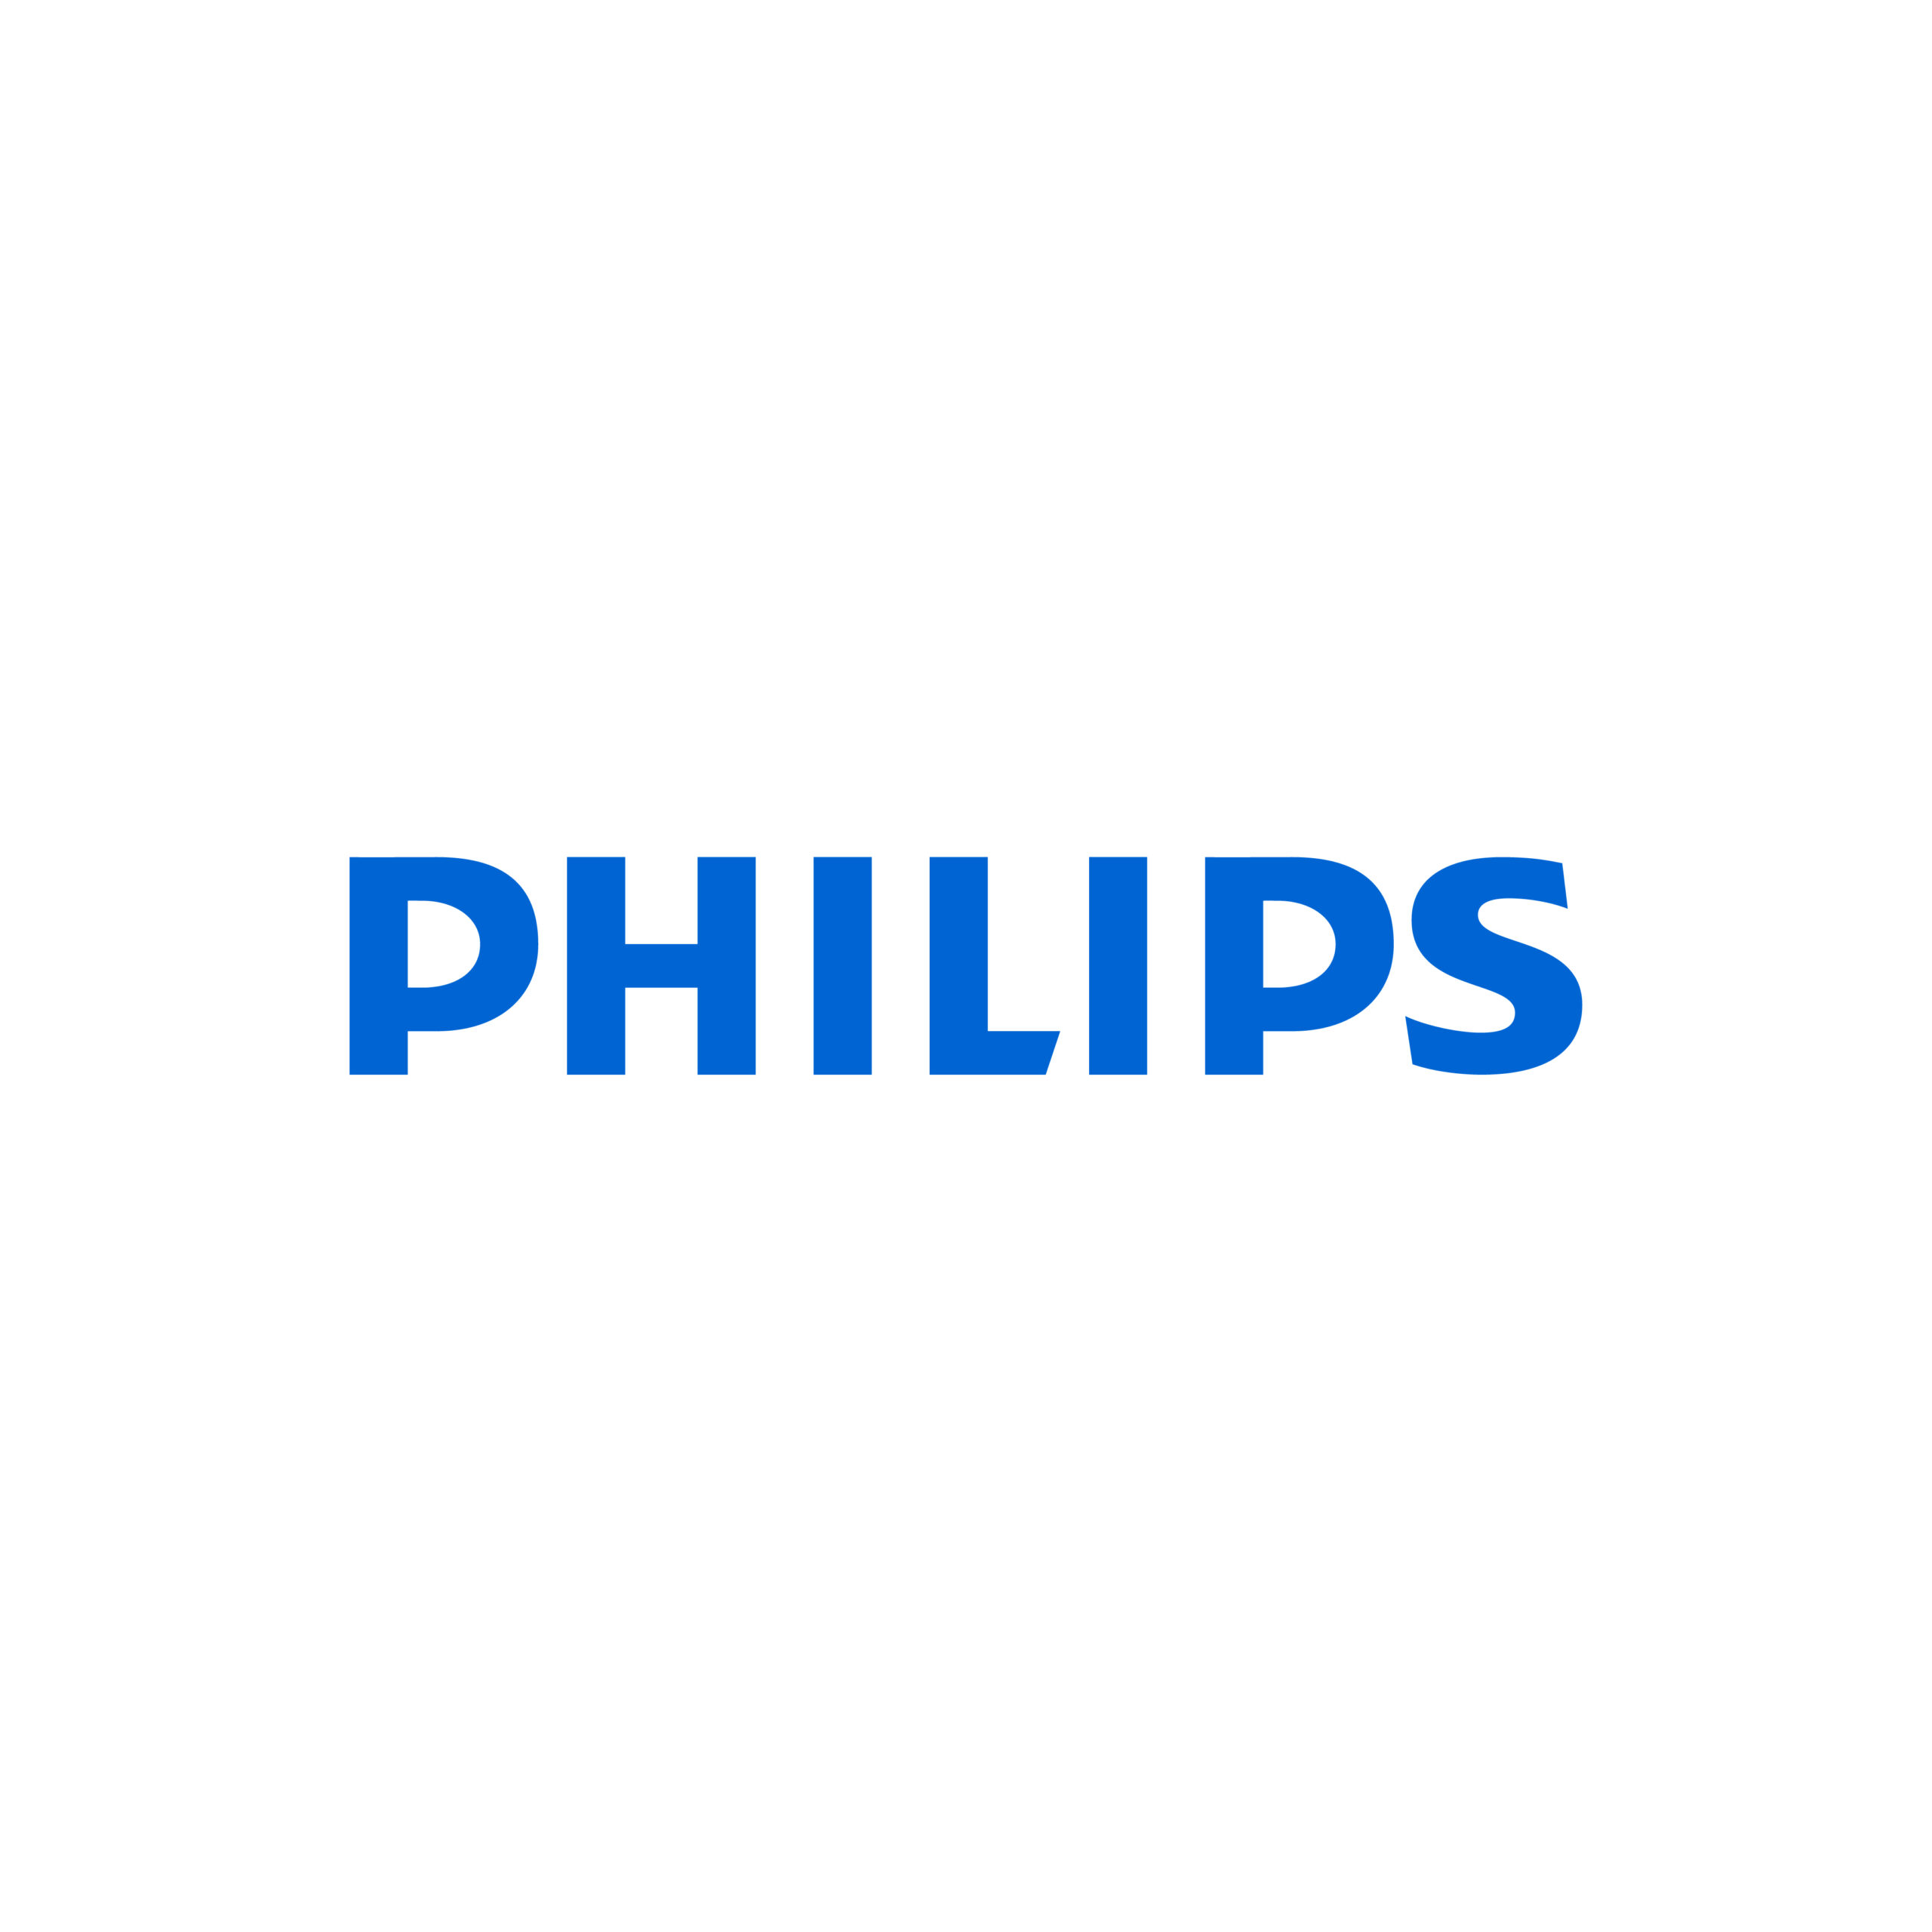 Philips. Филипс лого. Philips иконка. Philips logo без фона. Форум филипс